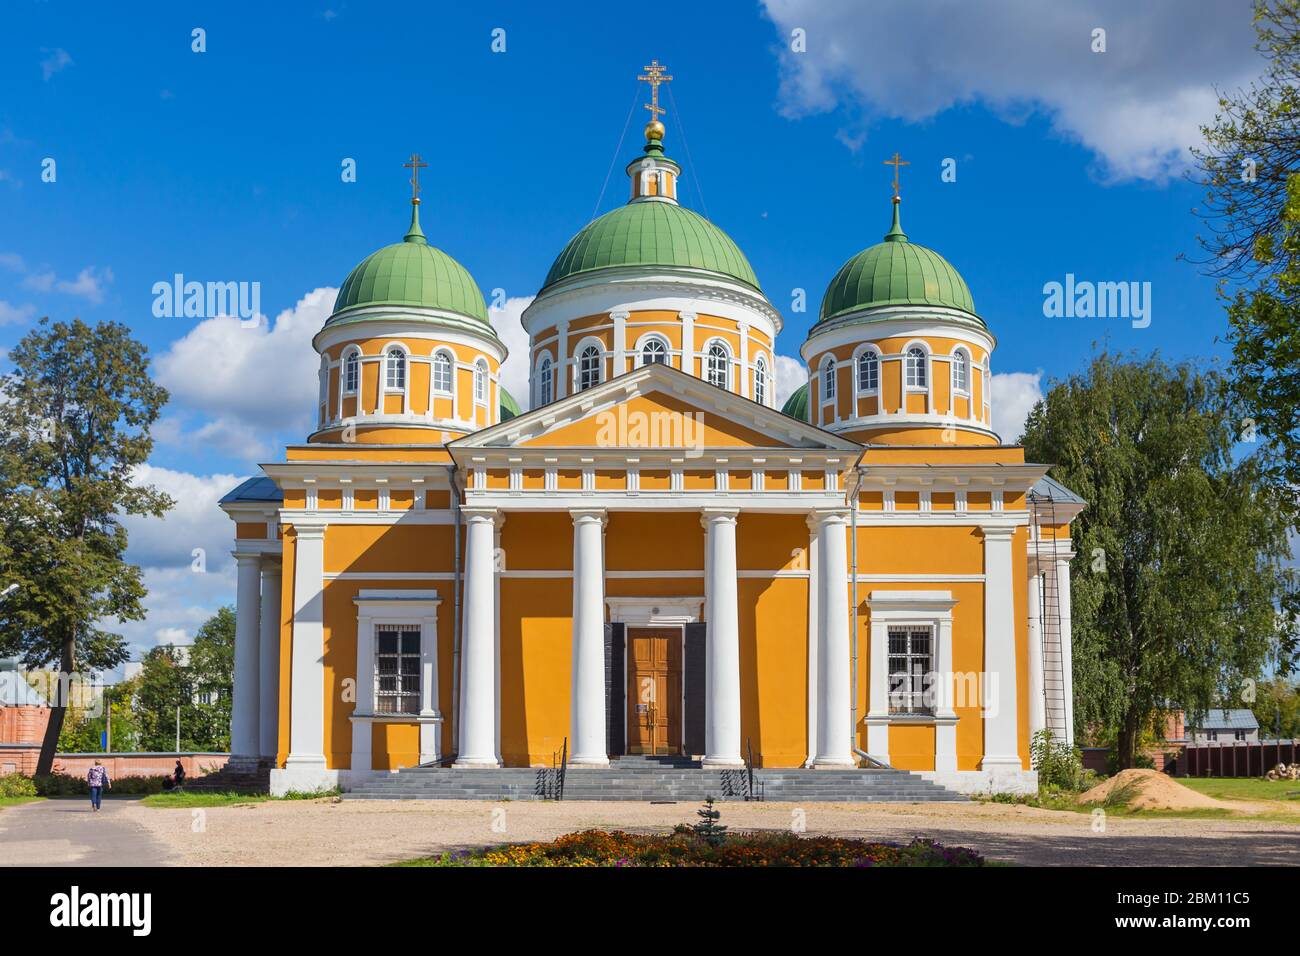 Cathédrale de la Nativité, monastère de la Nativité, 1820, Tver, région de Tver, Russie Banque D'Images